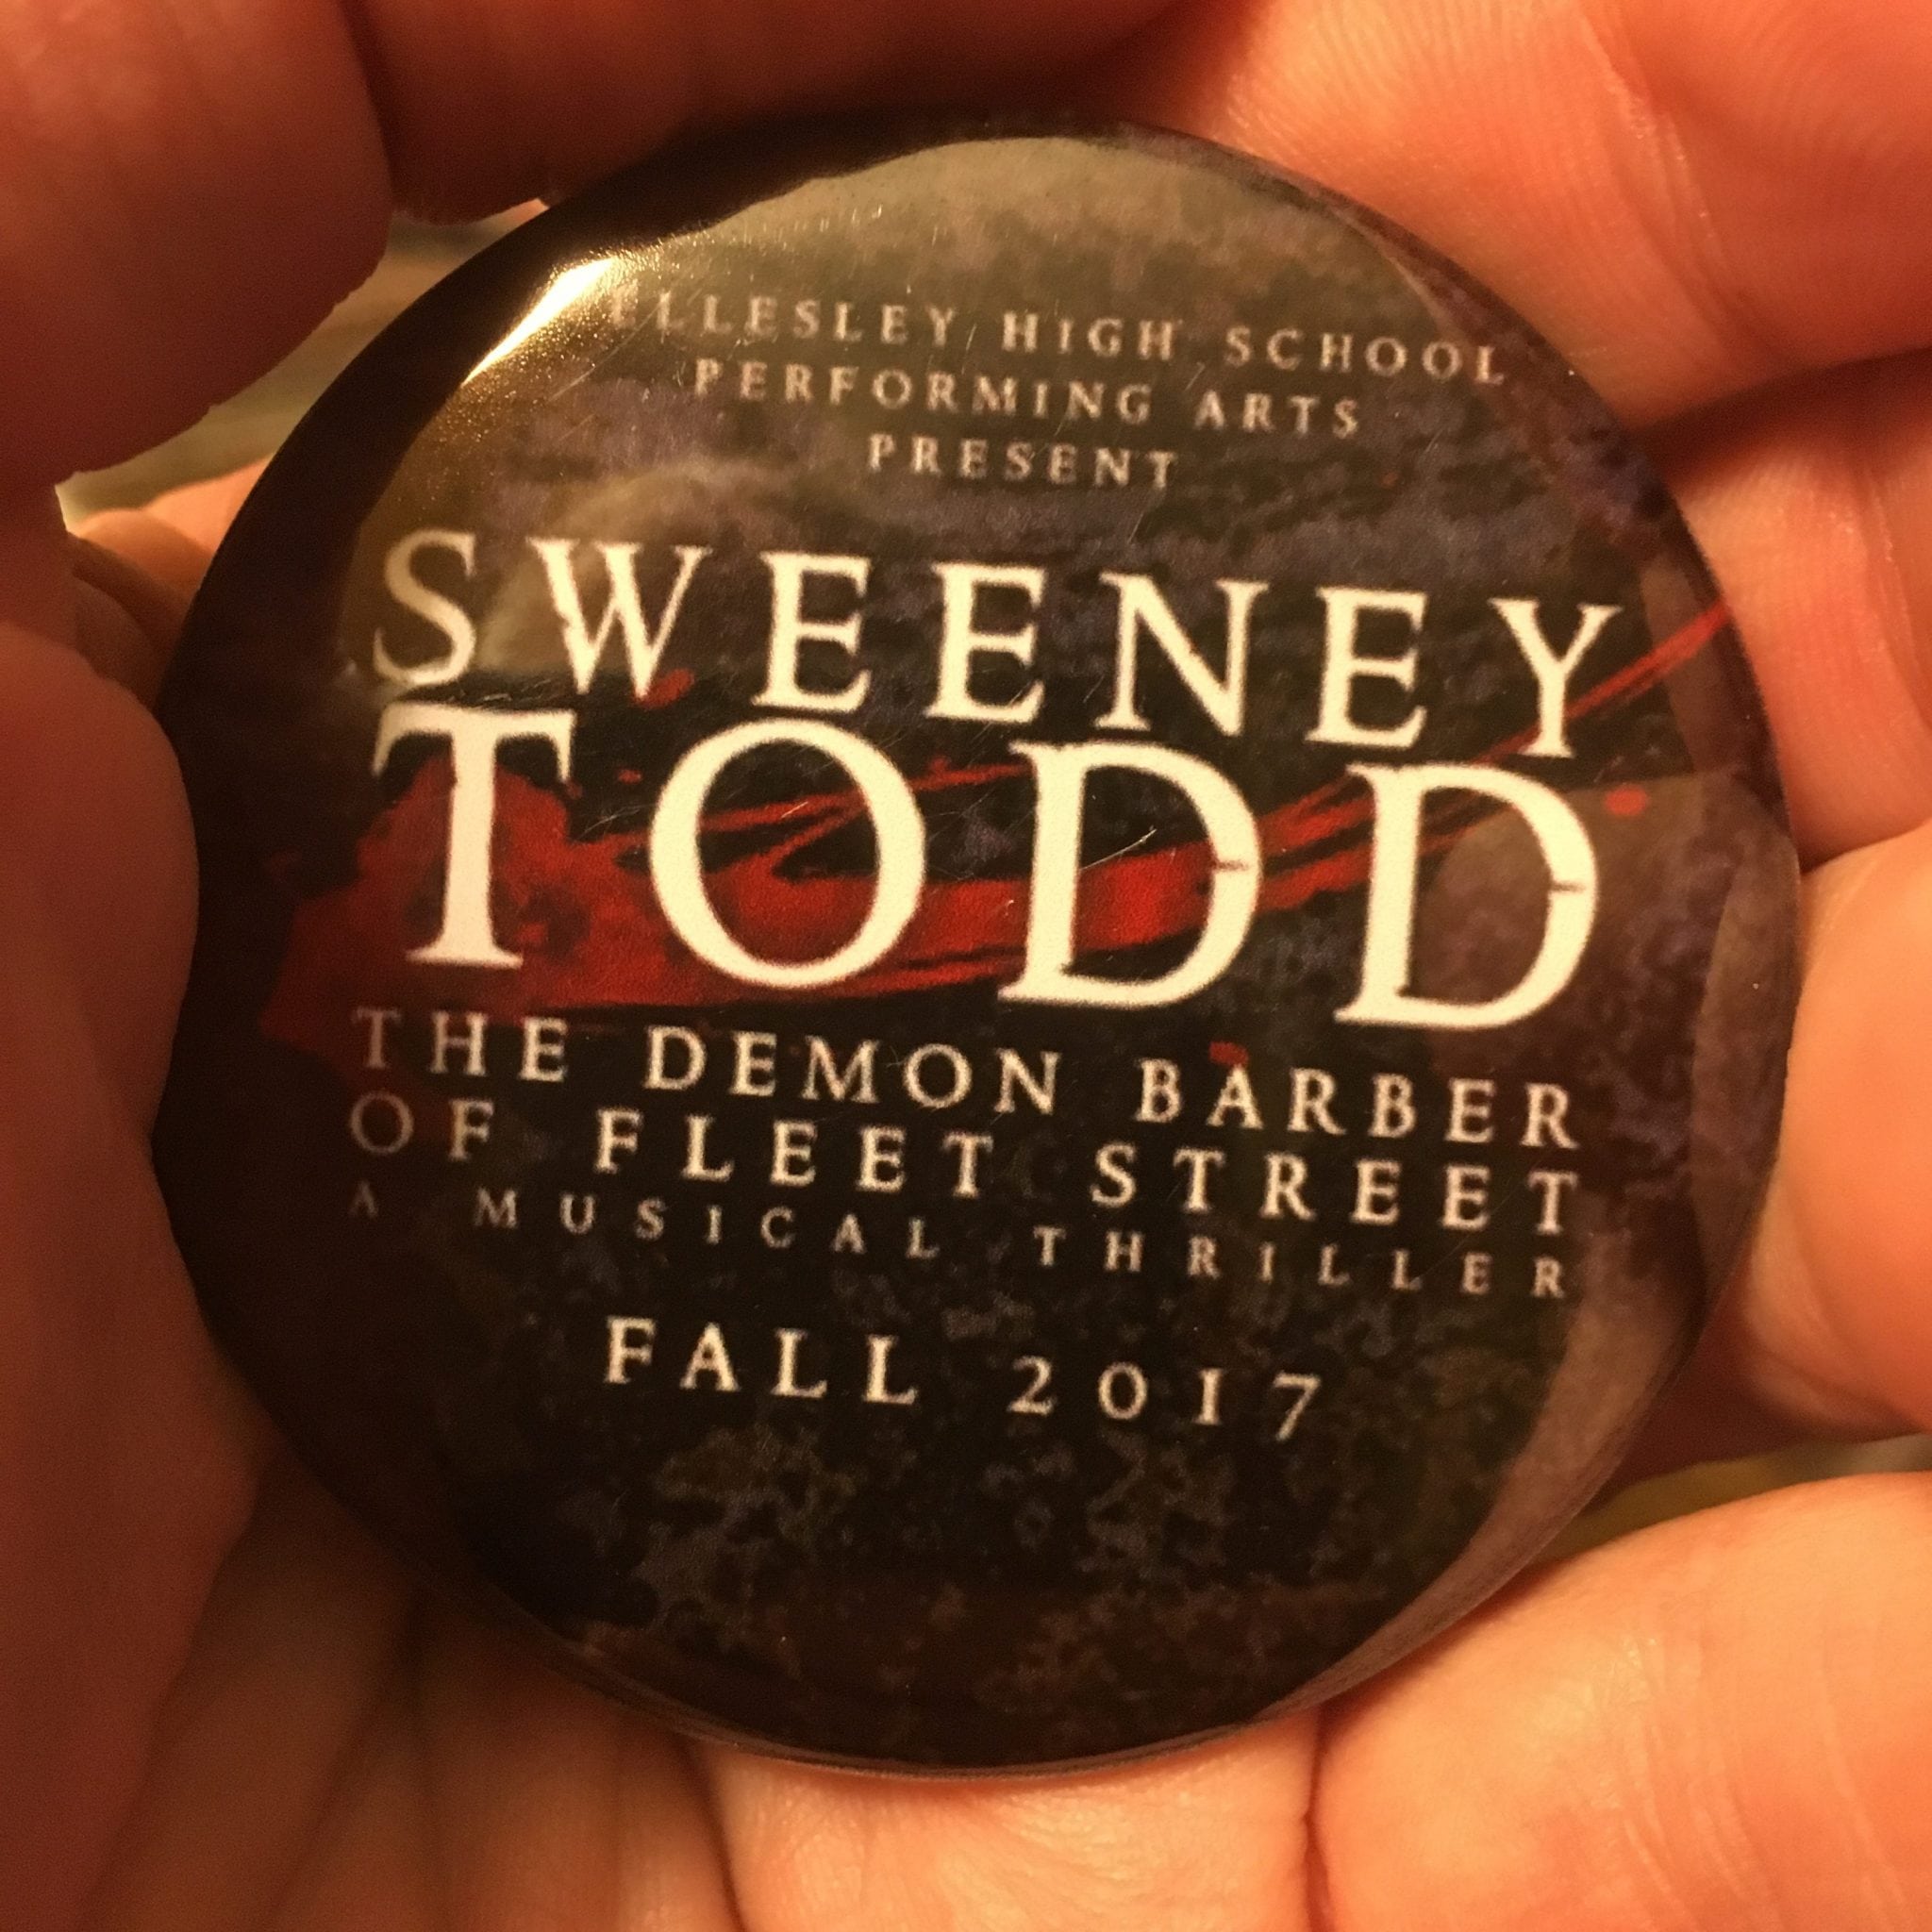 Wellesley High's Sweeney Todd